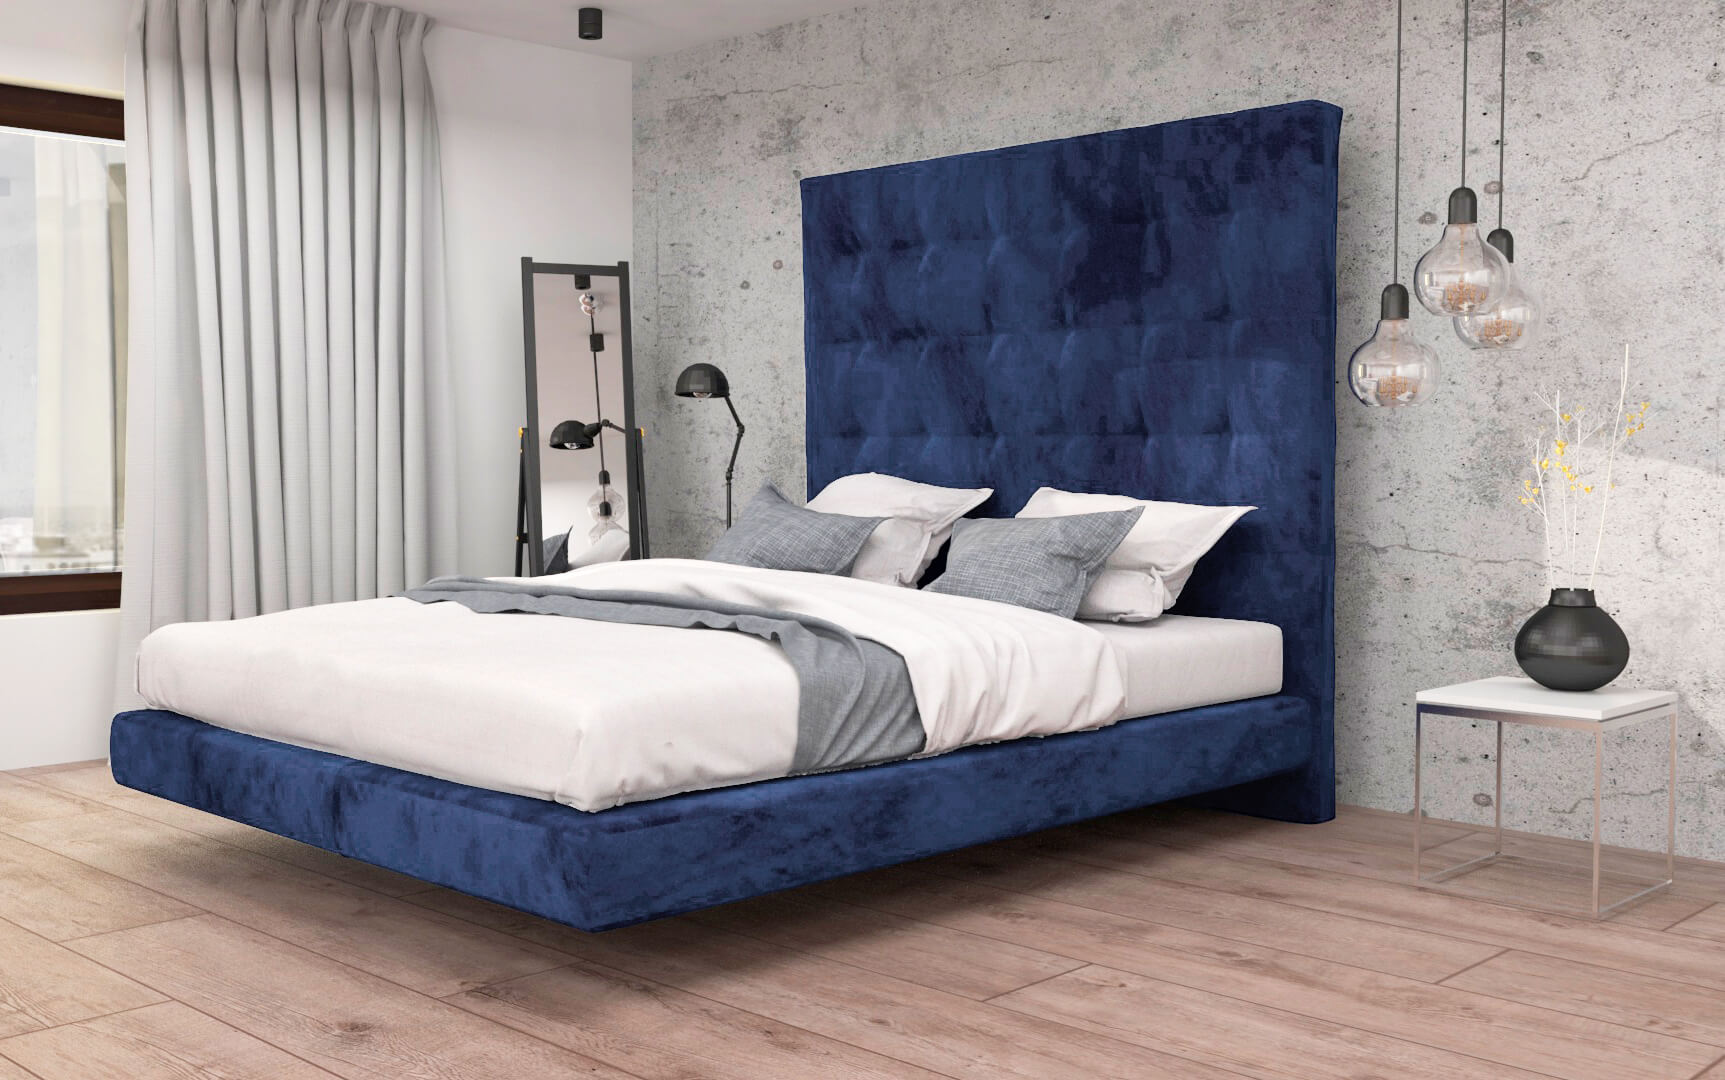 Łóżko z panelem ściennym meble tapicerowane wypoczynkowe producent HM Manufaktura Nowy Sącz Kraków Małopolska